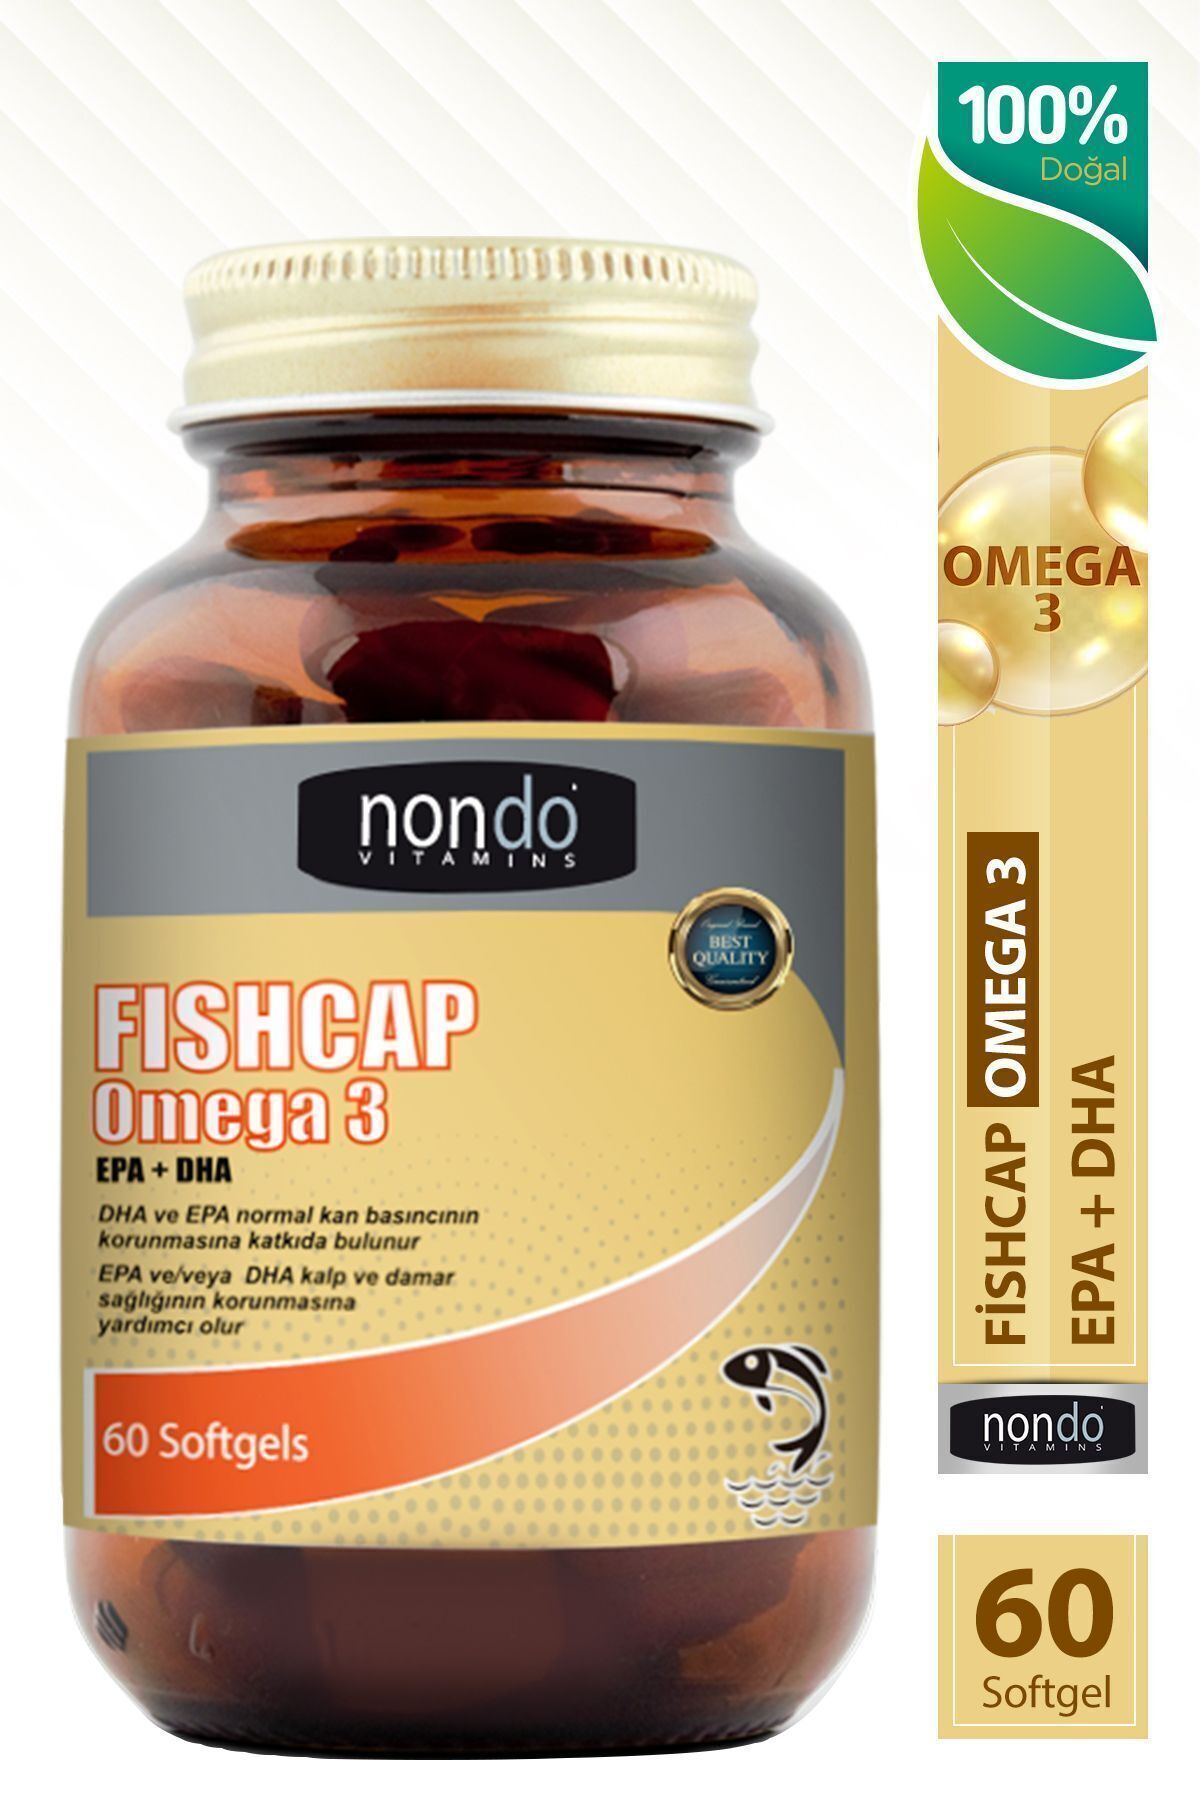 Nondo Fishcap Balık Yağı Omega 3 Epa Dha 1000 Mg 50 Yumuşak Jelatin Softgel Kapsül